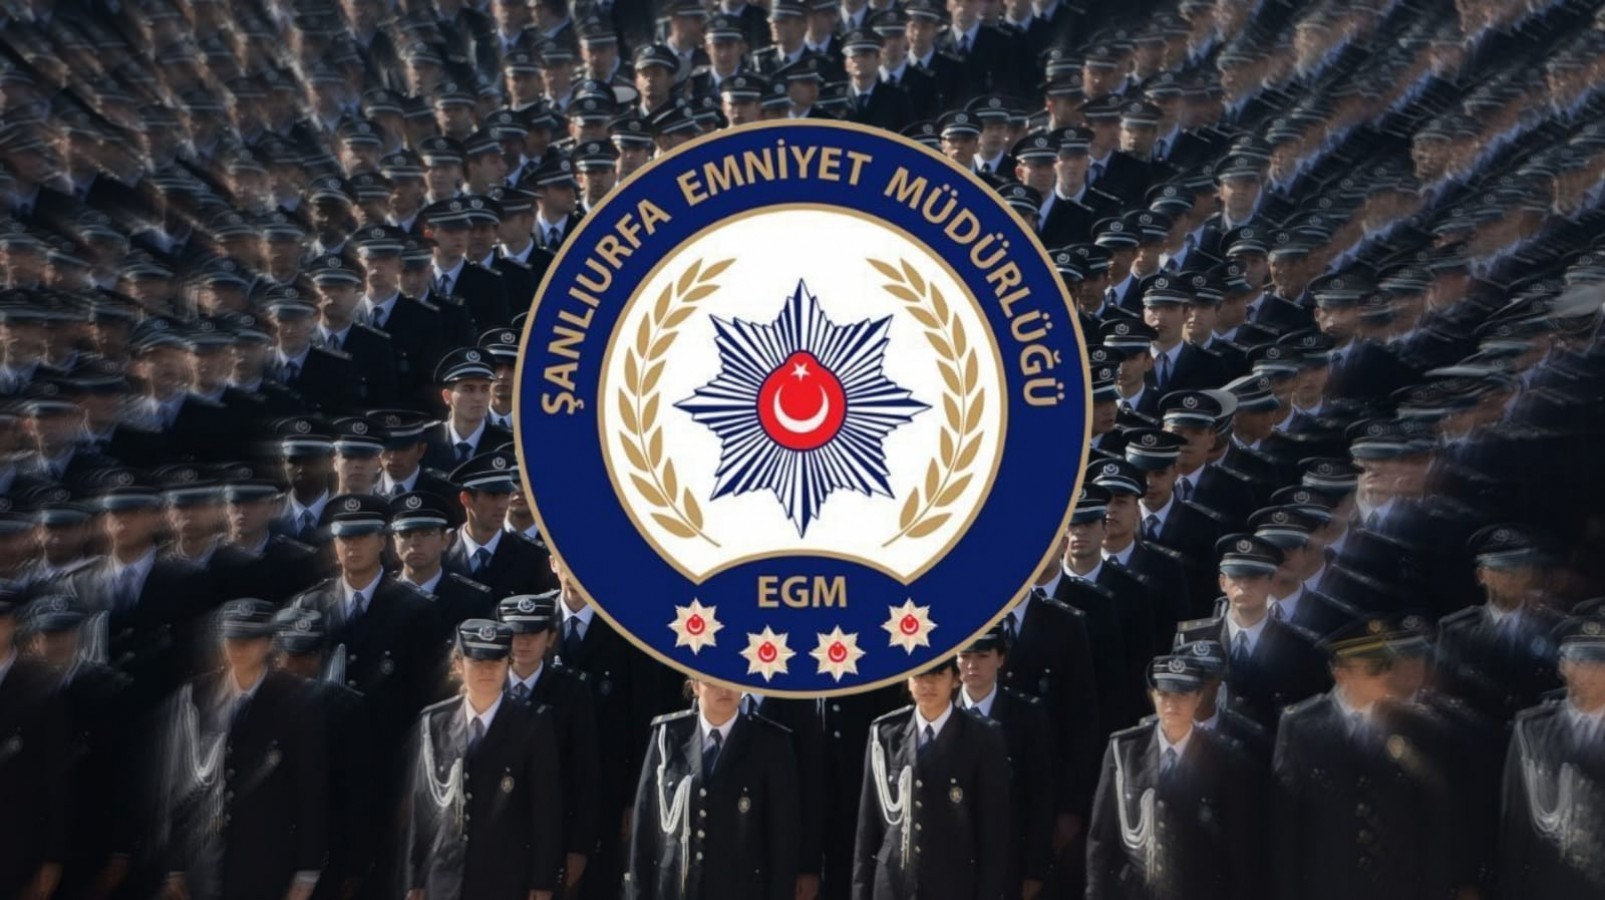 Şanlıurfa'da Polis Teşkilatının 178. Kuruluş Yıl Dönümü Etkinlikleri Düzenlenecek